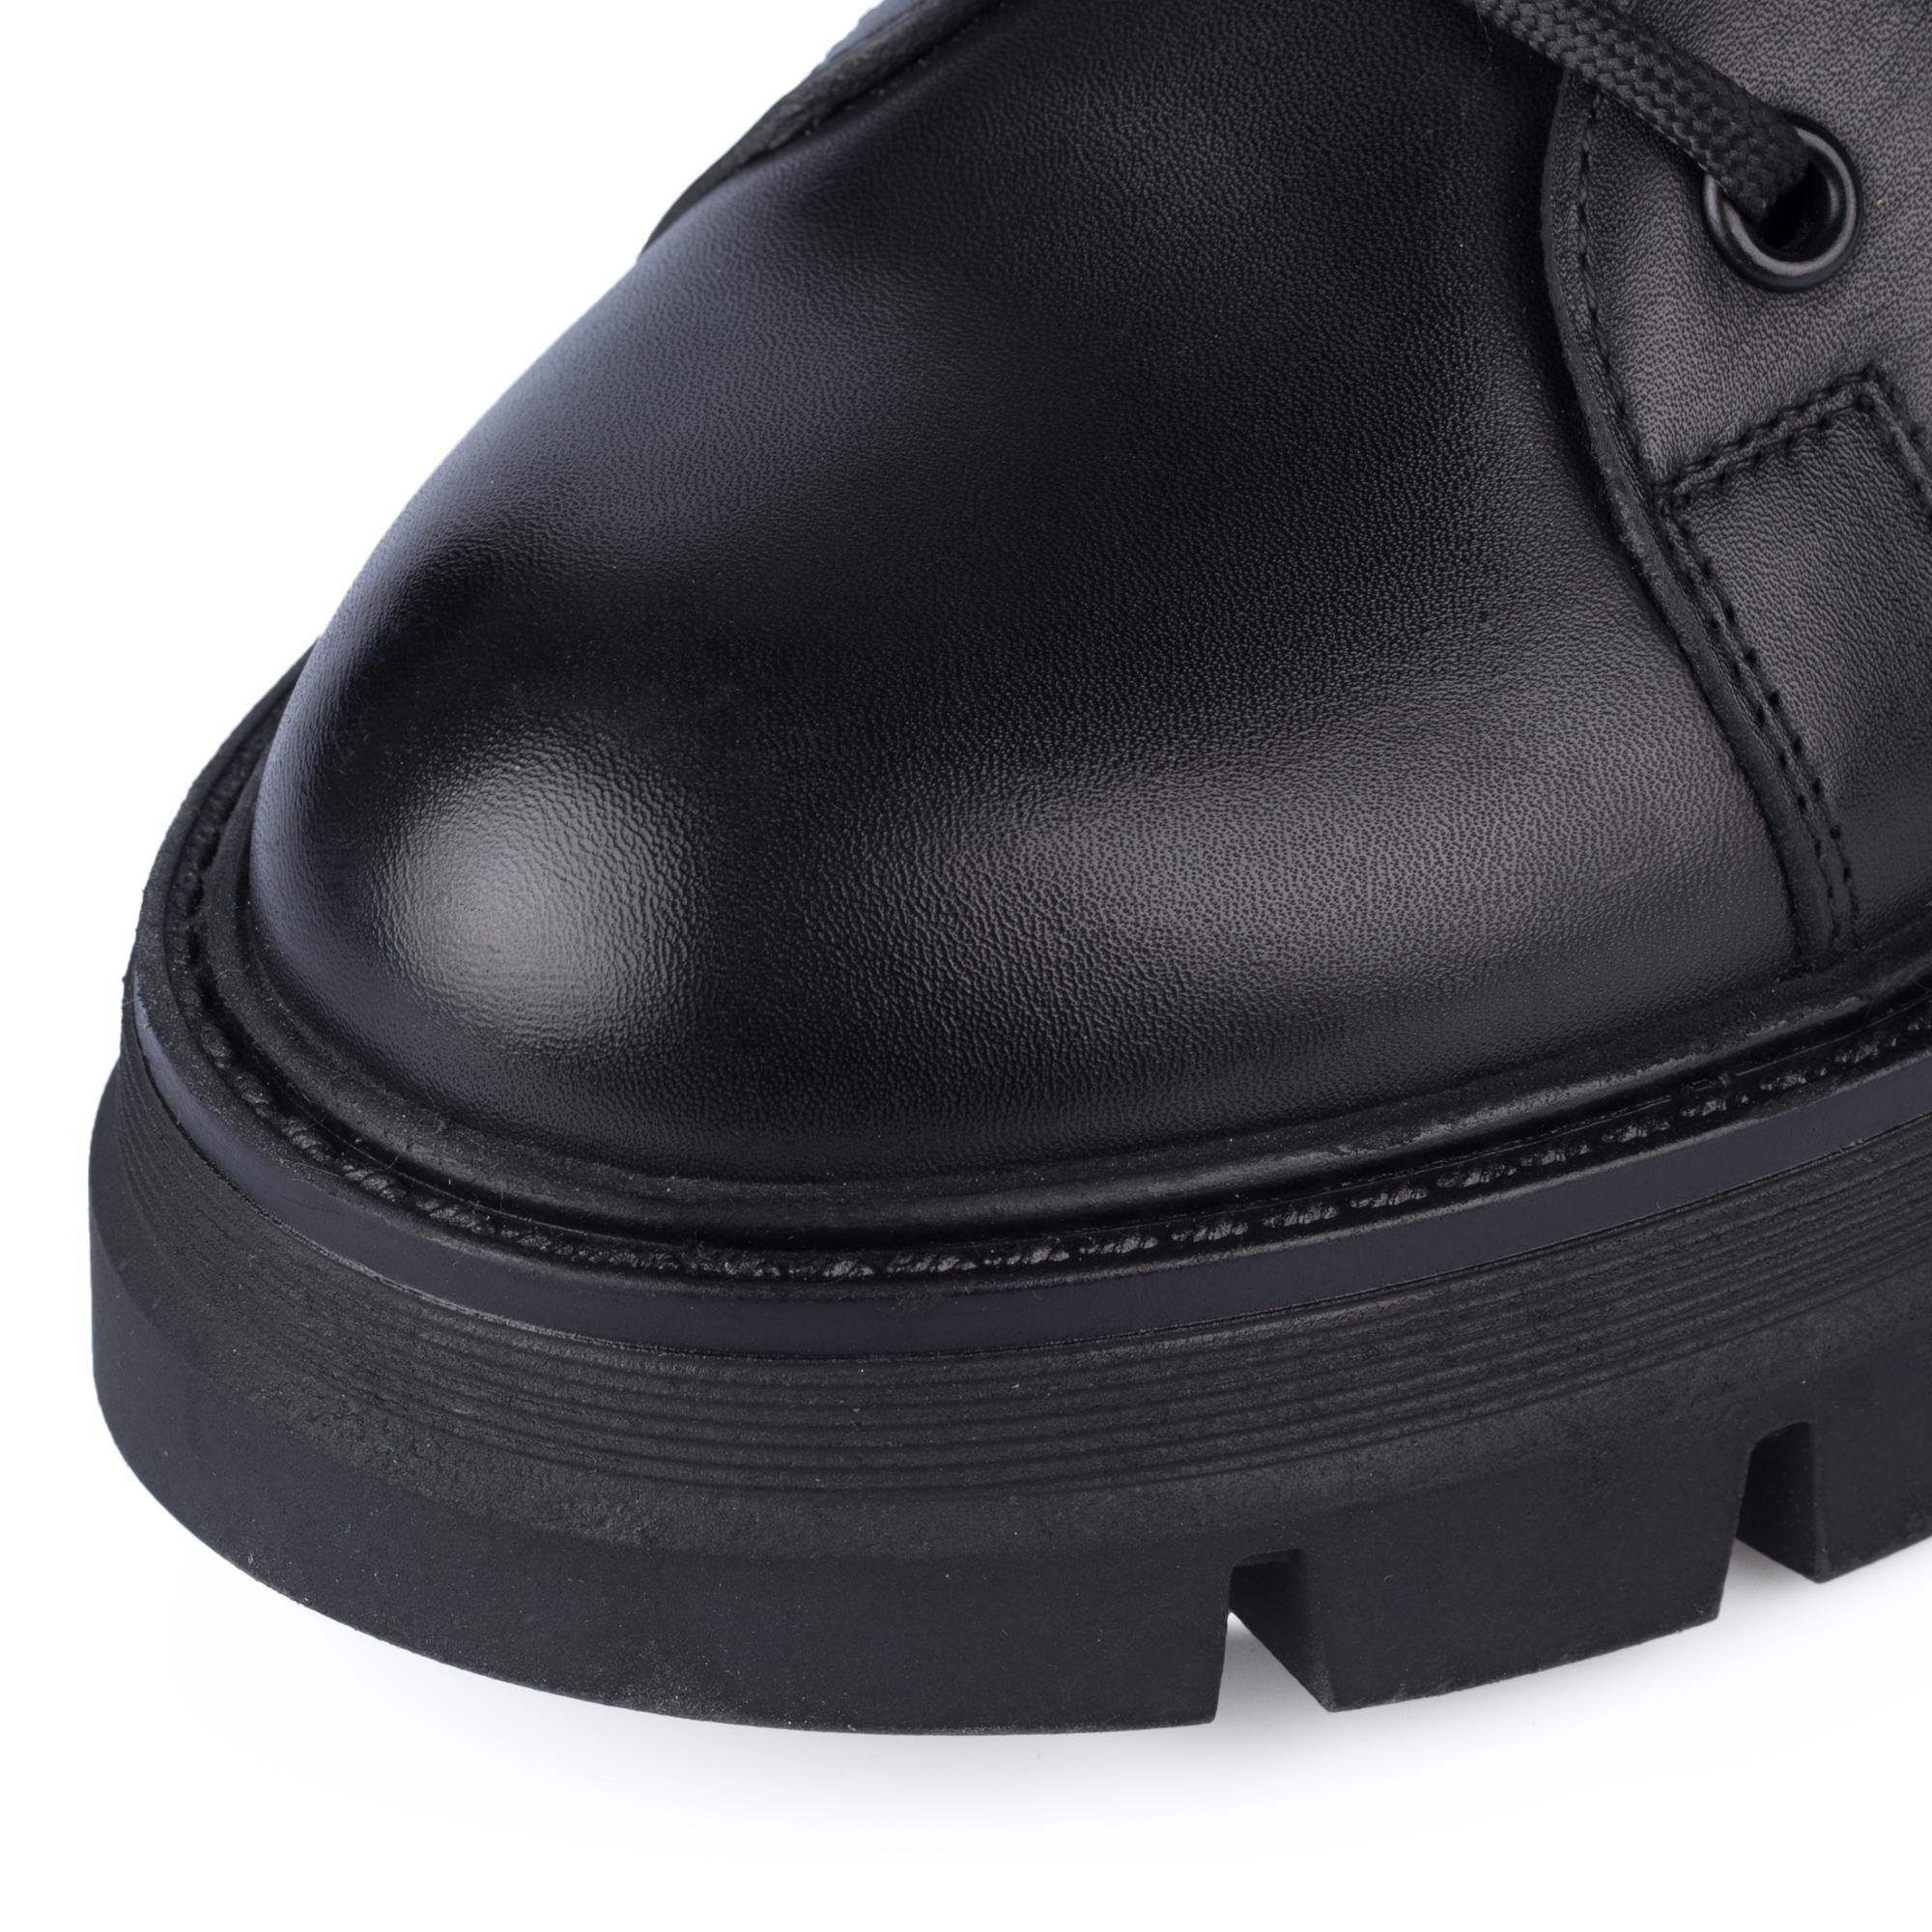 Ботинки Thomas Munz 539-021C-2102, цвет черный, размер 39 - фото 6